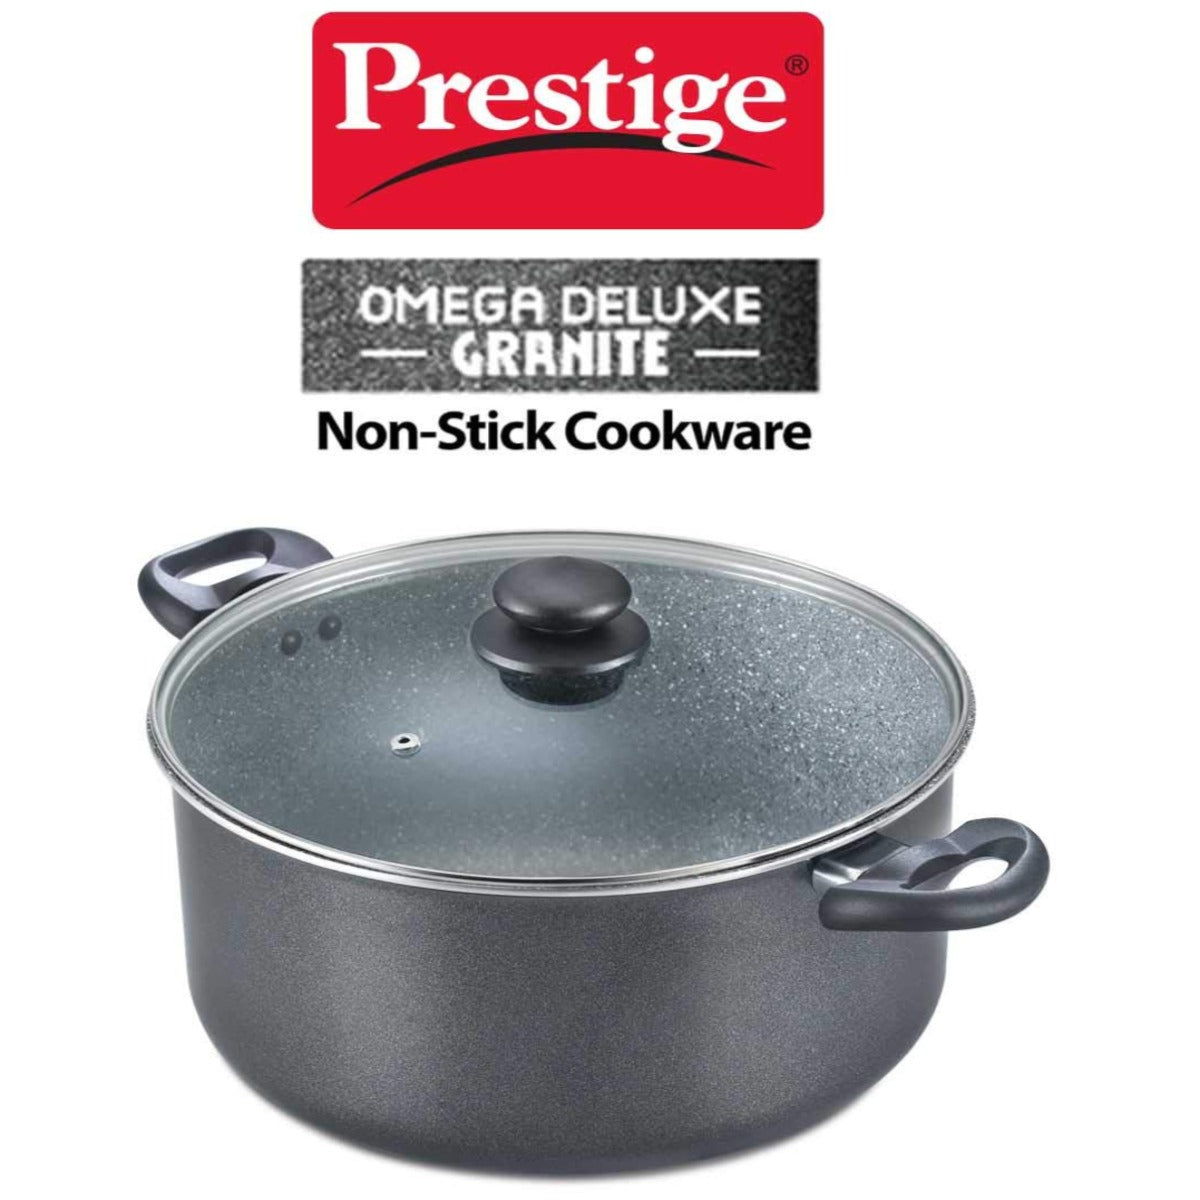 Prestige Omega Deluxe Granite Aluminium Induction Base Non-Stick Stock Pot, 280MM